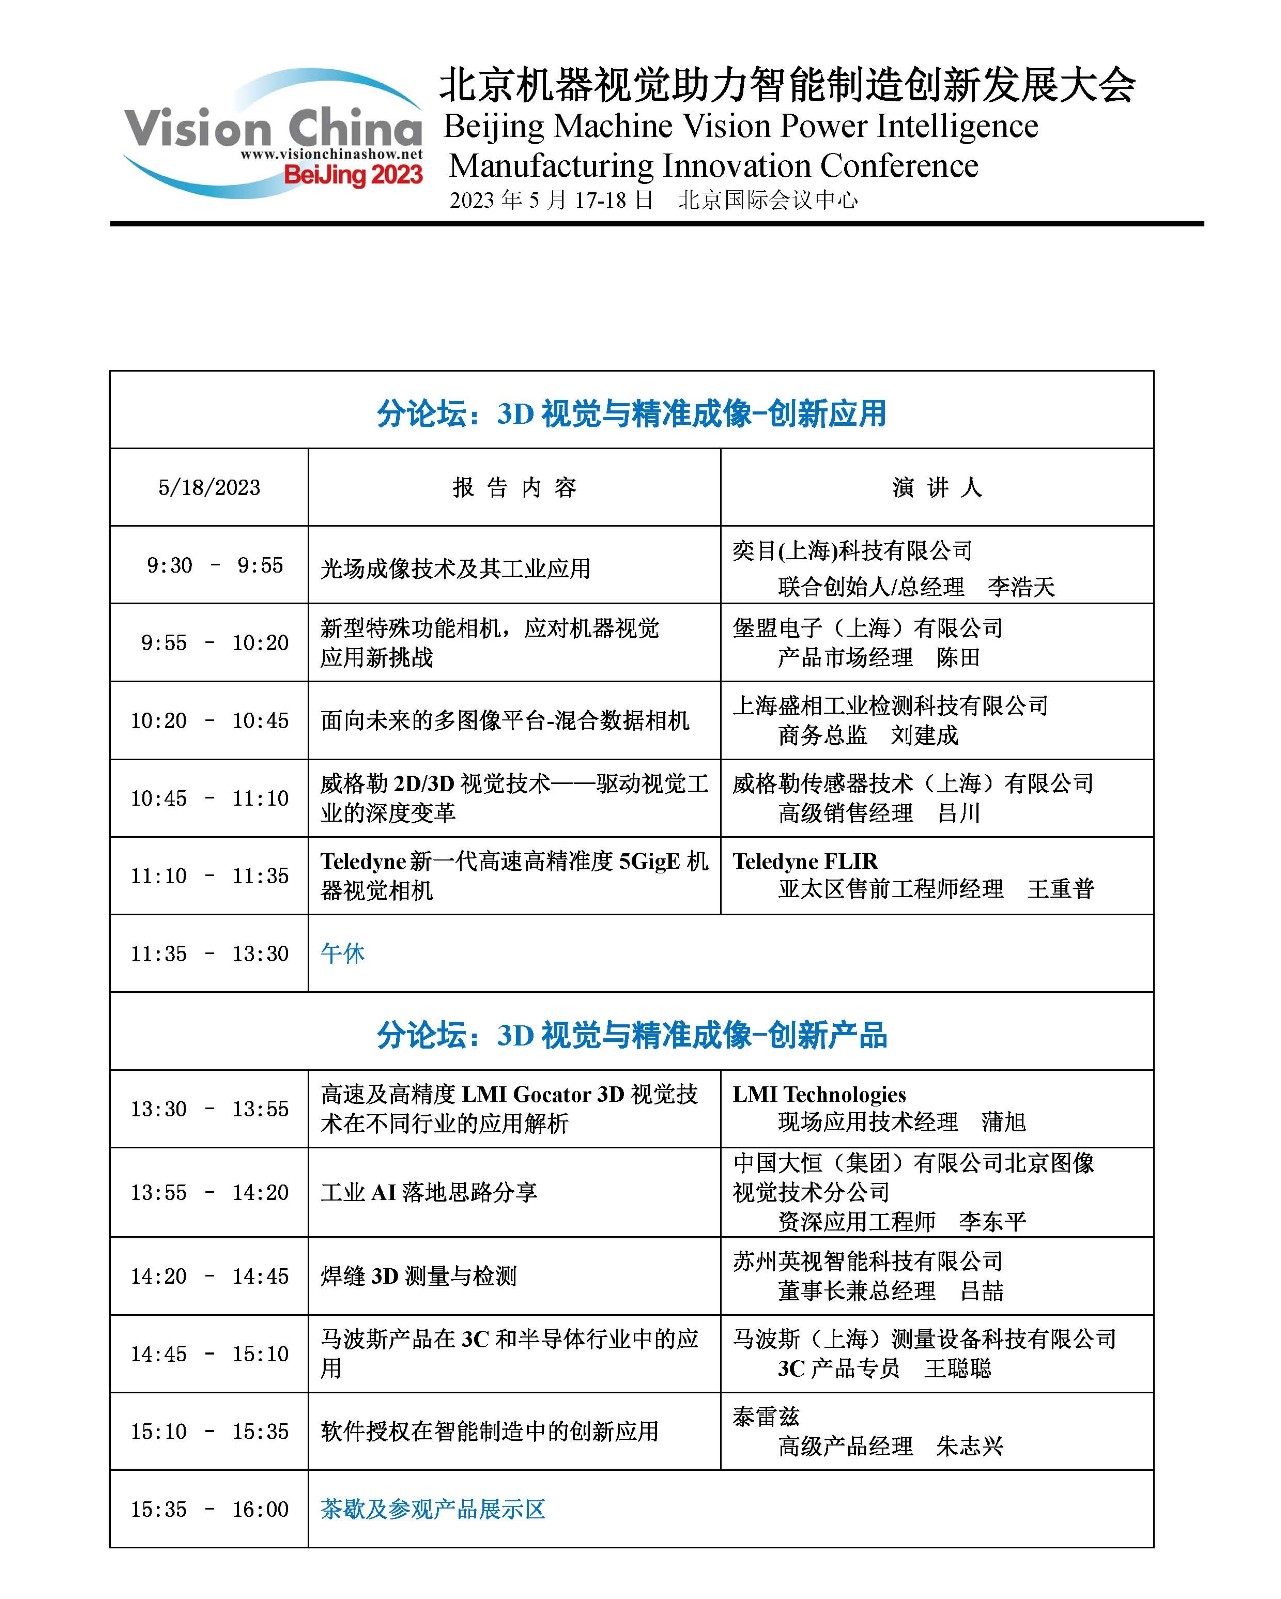 2023年北京机器视觉助力智能制造创新发展大会日程(1)_页面_2.jpg